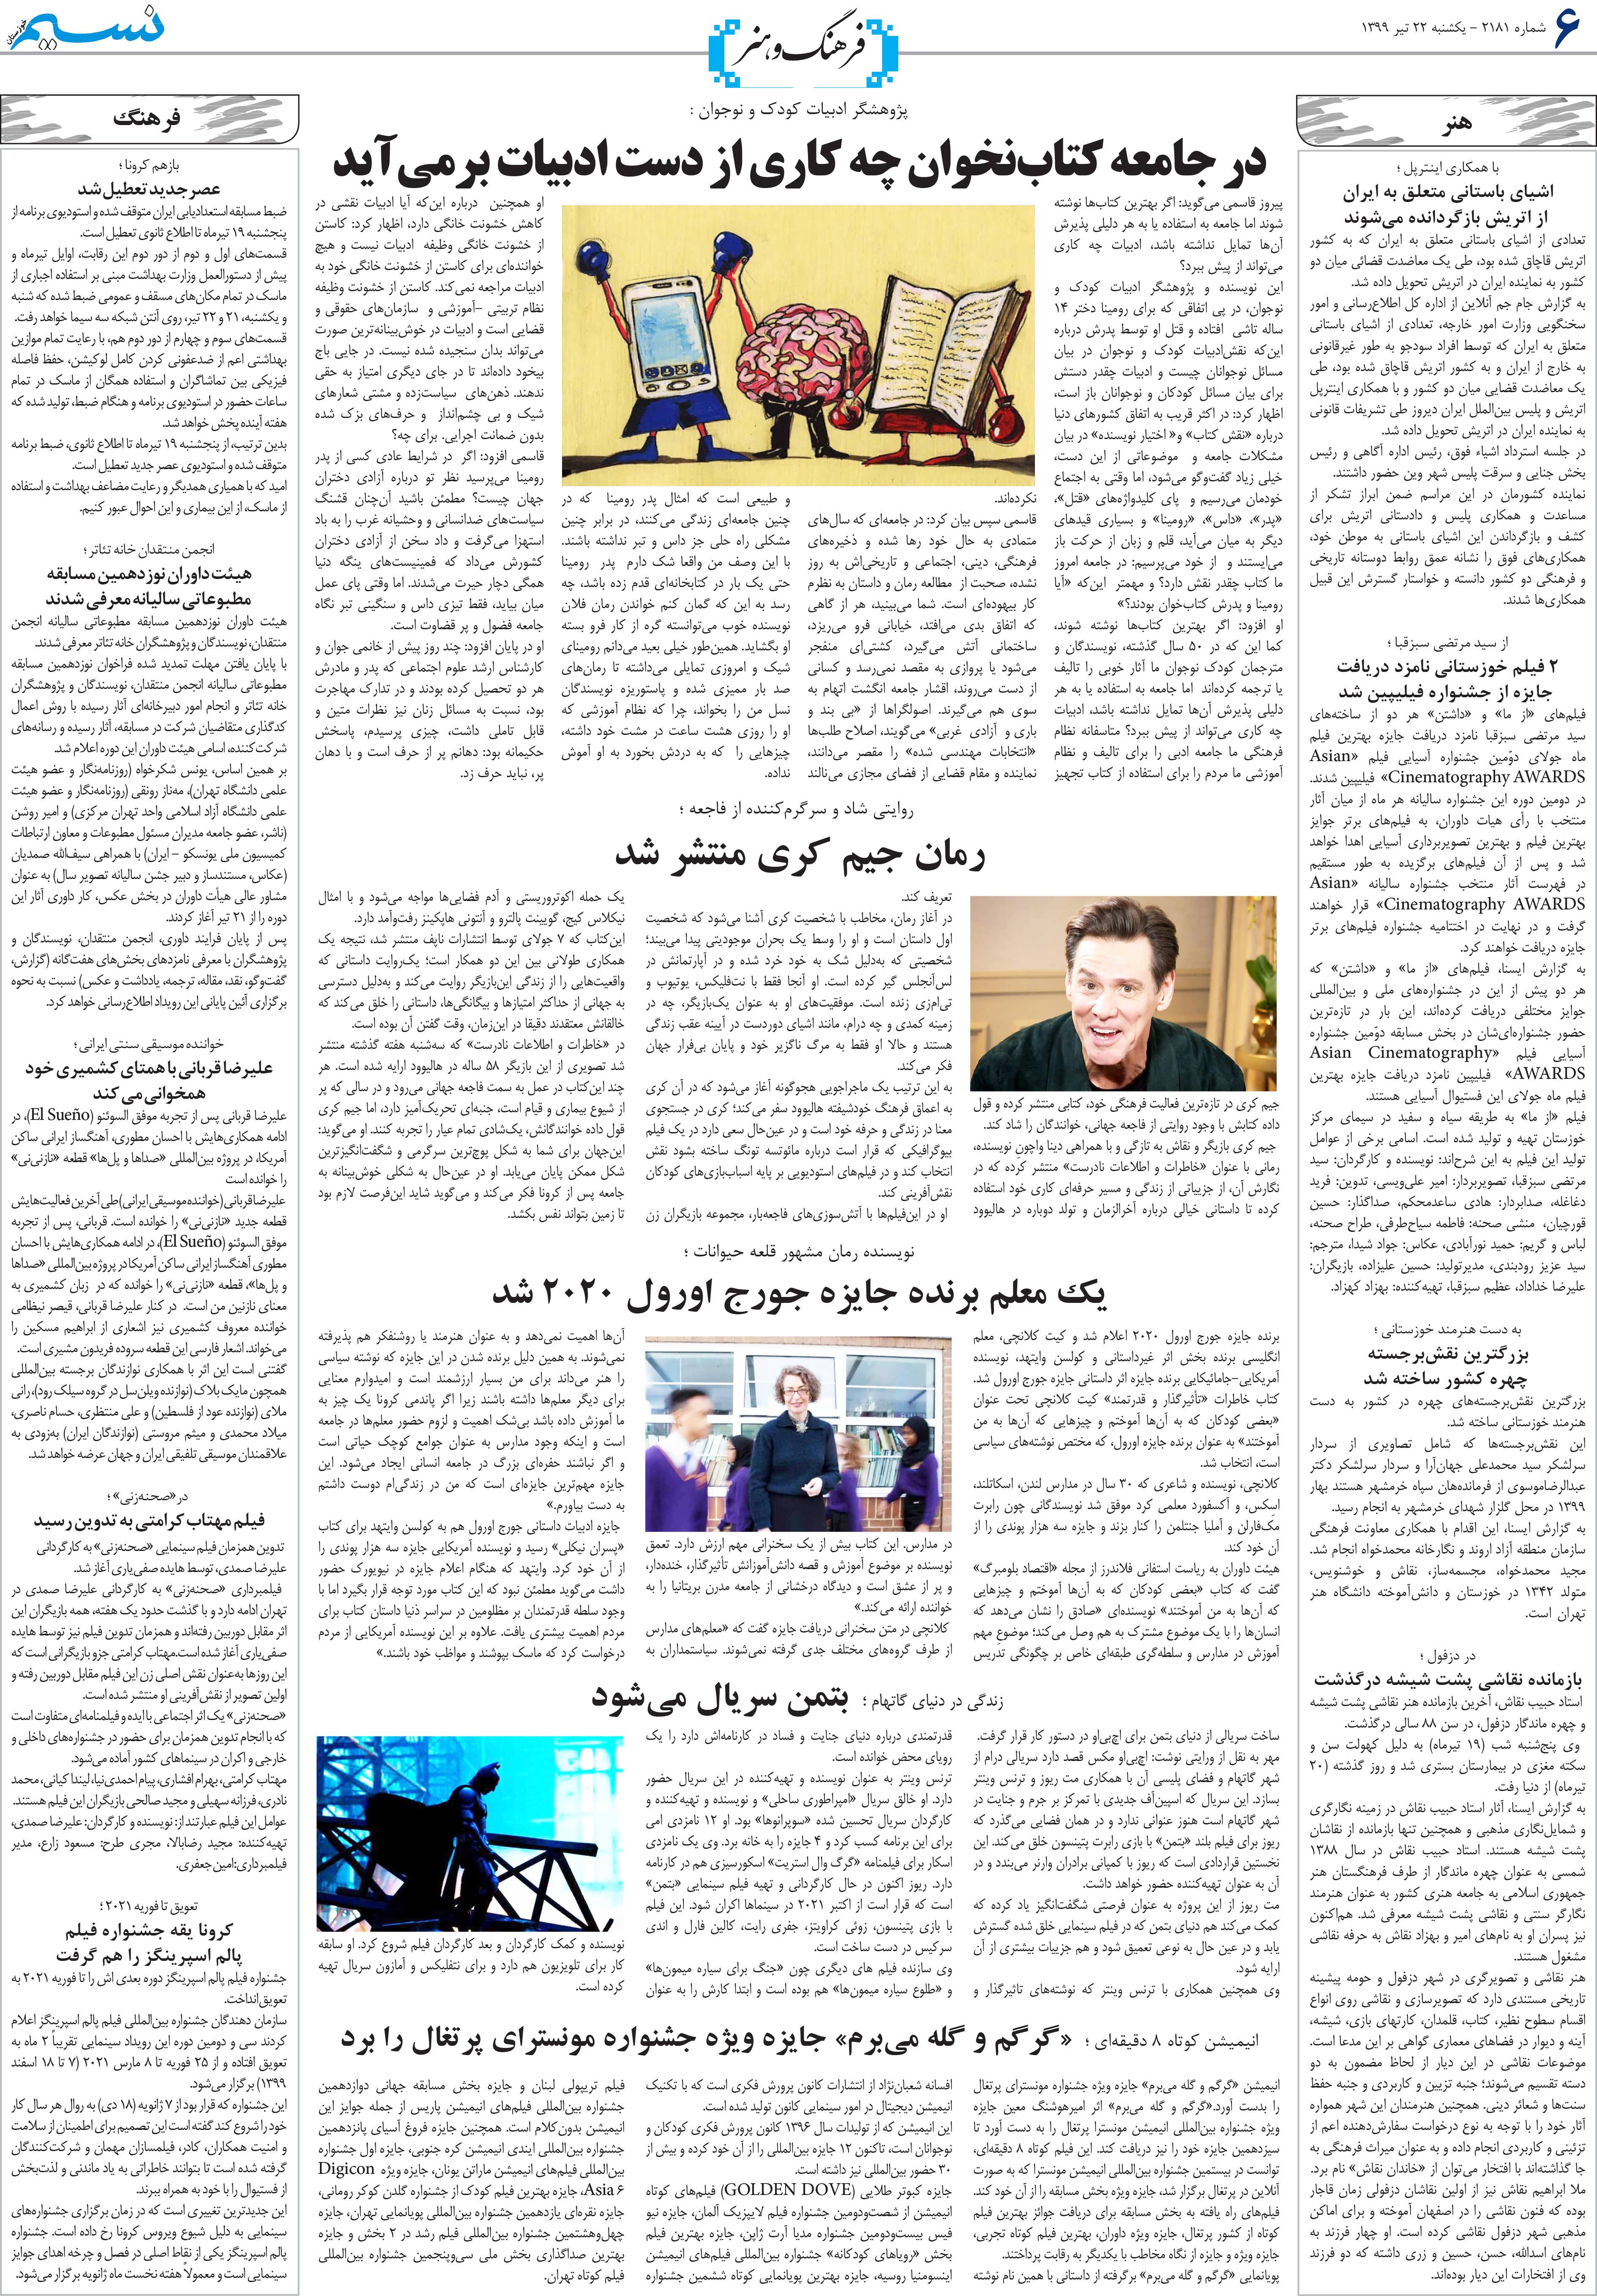 صفحه فرهنگ و هنر روزنامه نسیم شماره 2181